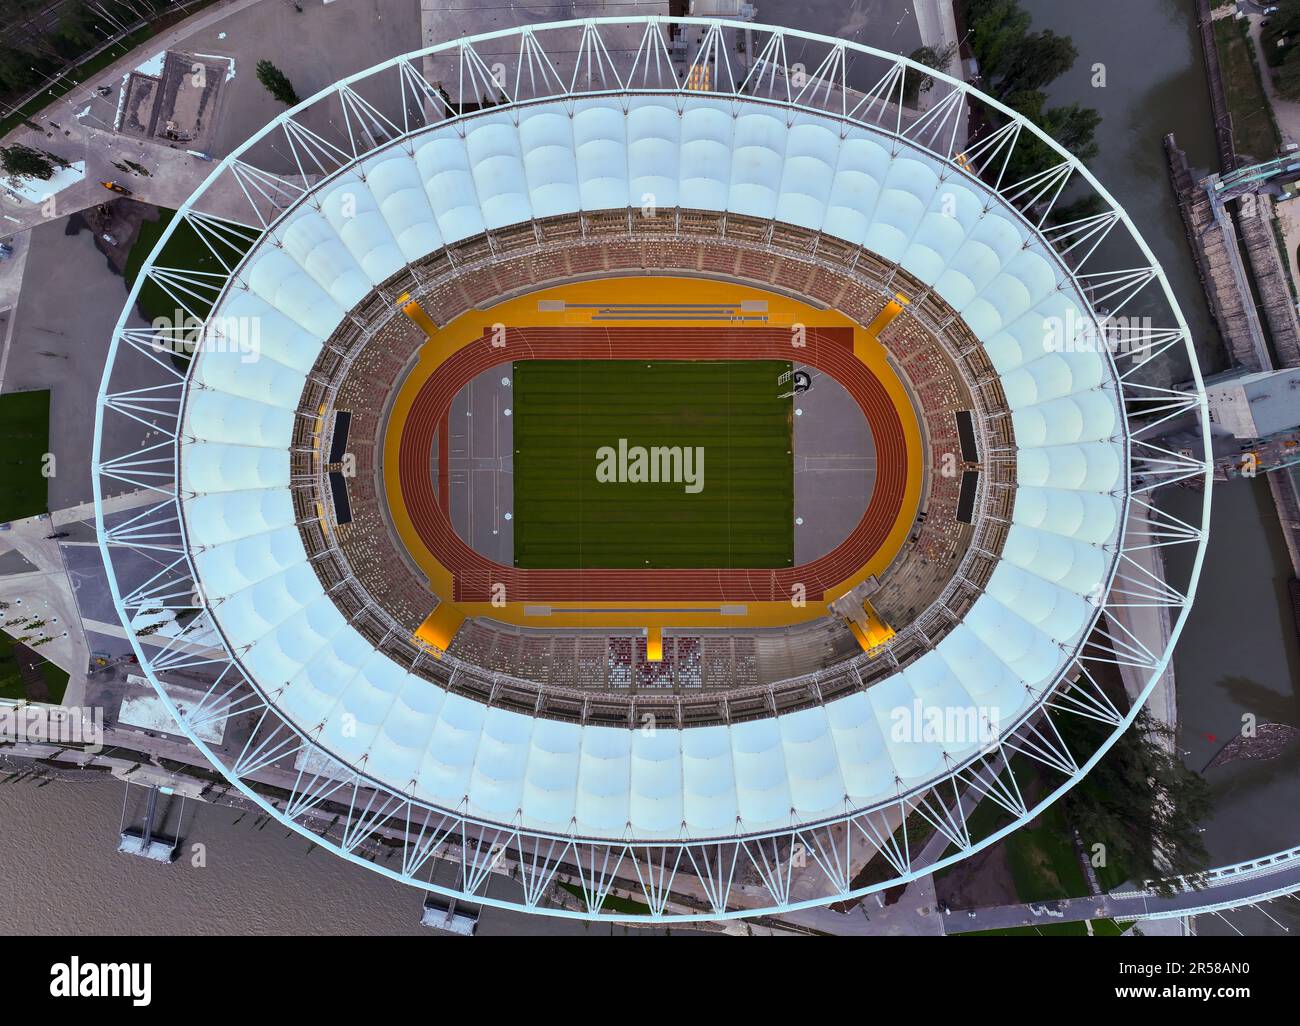 Stadio di atletica a Budapest, Ungheria. Si prevede che ospiterà i Campionati Mondiali di Atletica 2023. Foto dall'alto verso il basso dall'intero stadio. Foto Stock